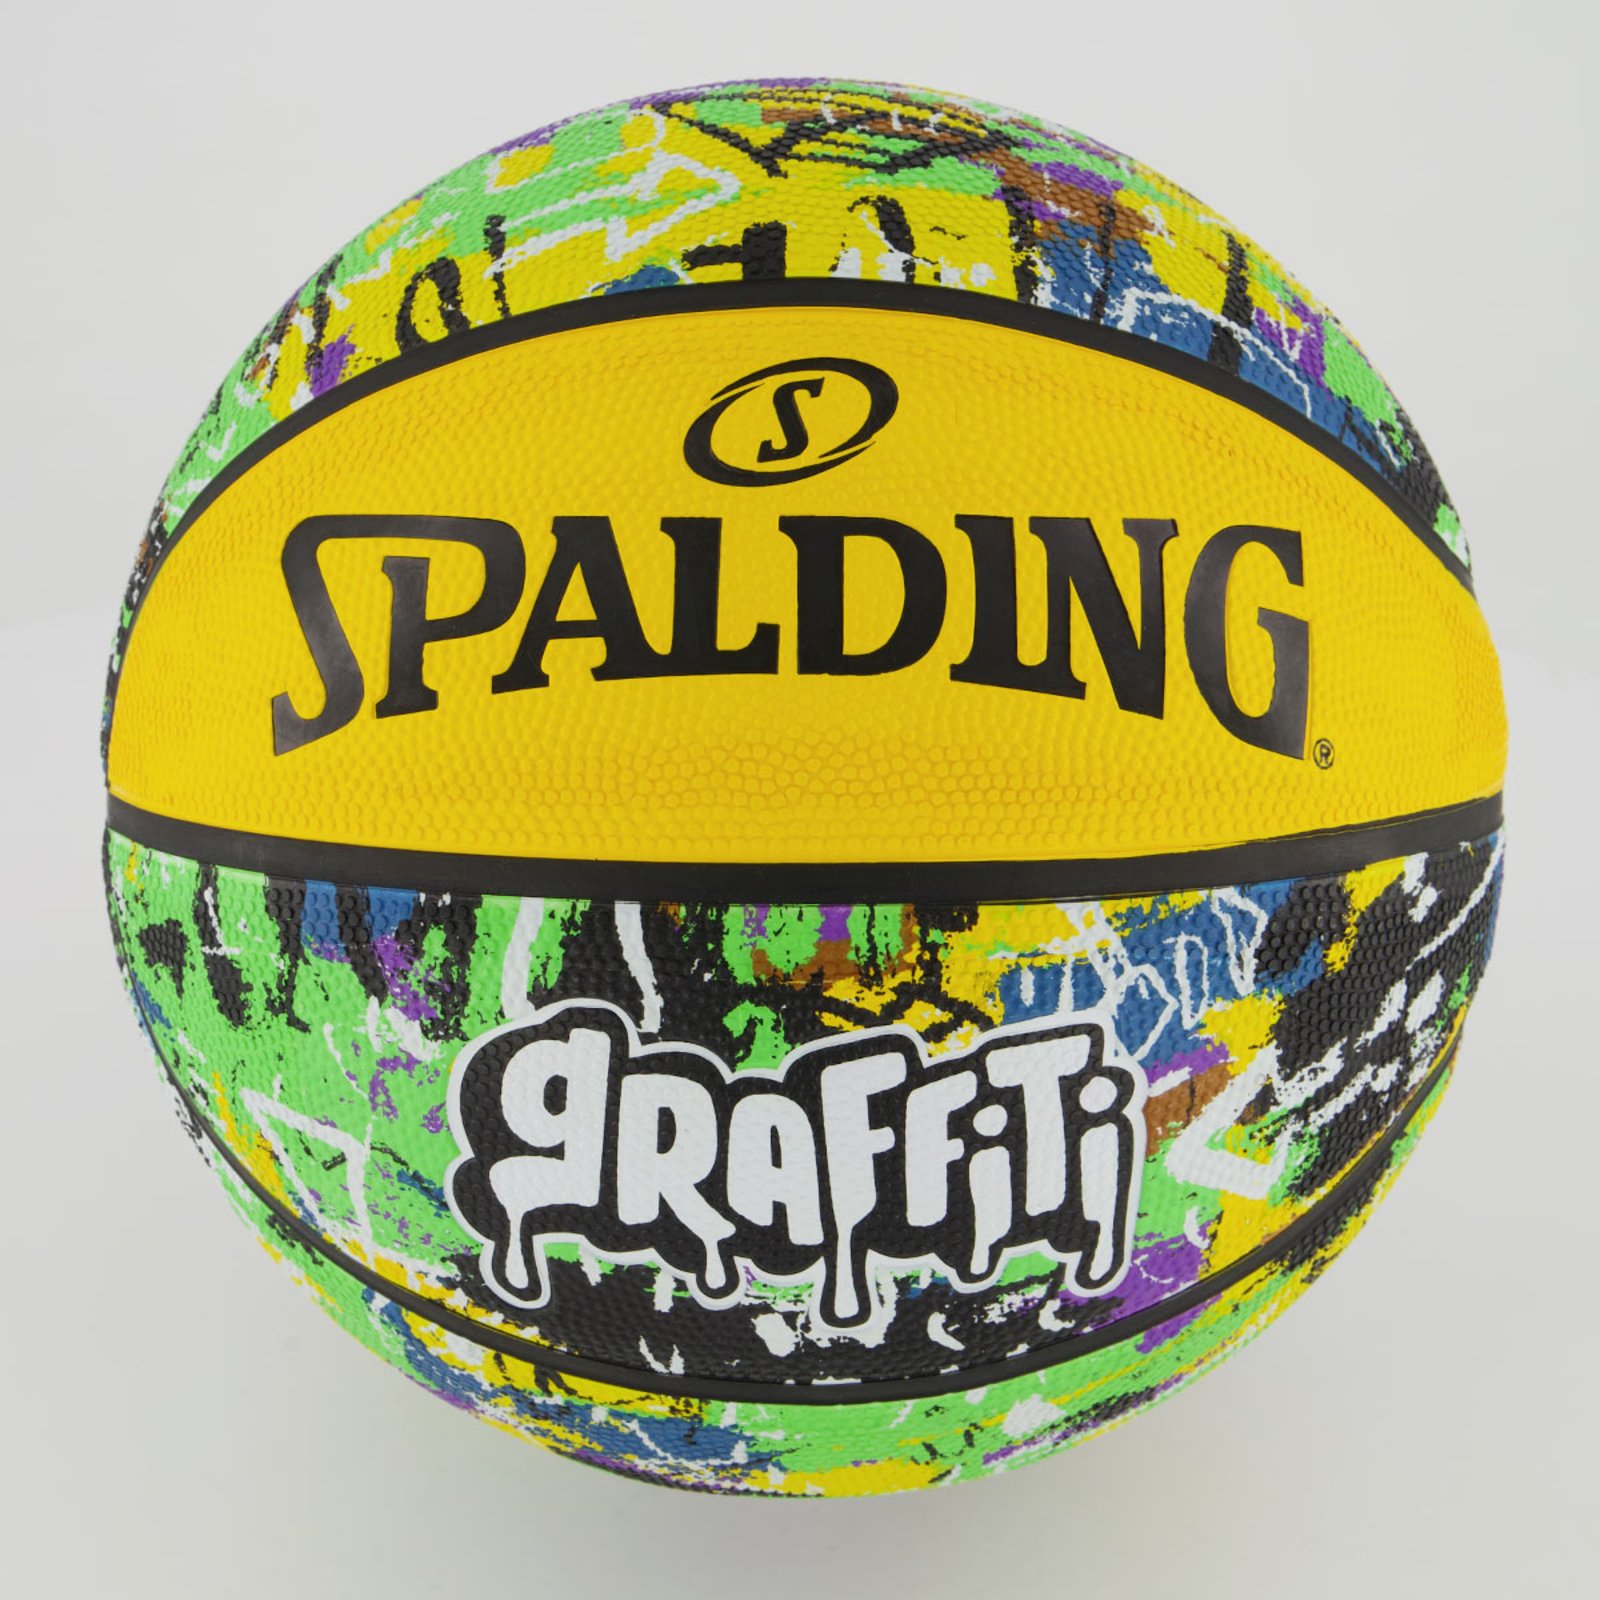 Bola de Basquete Spalding nba Grafite